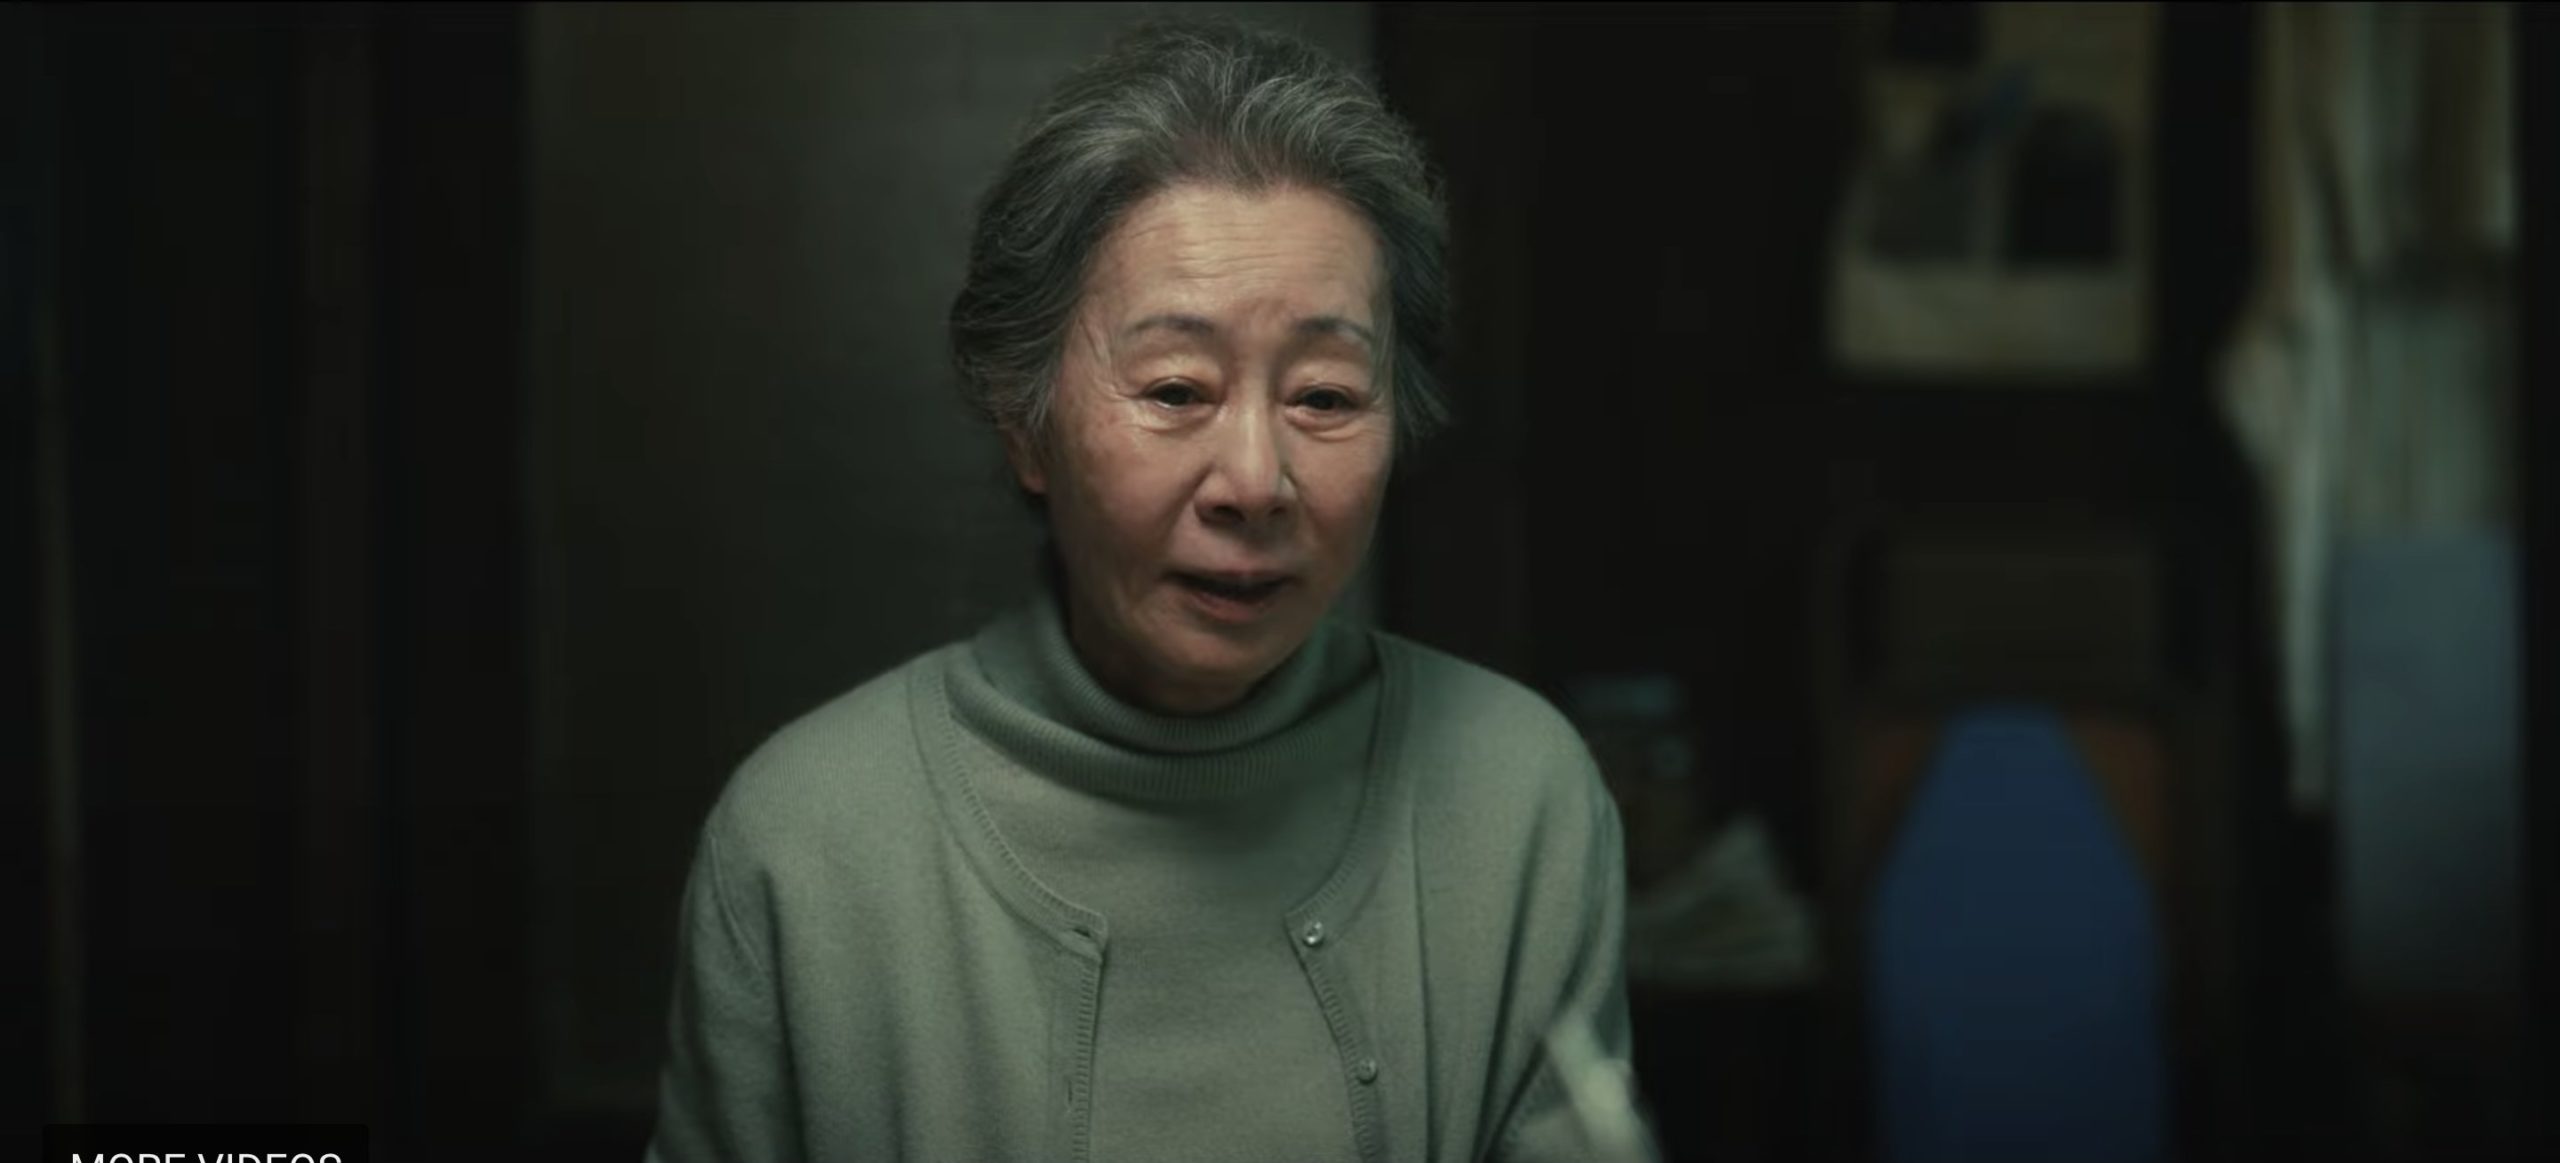 Cena da série Pachinko, mostra uma senhora idosa asiática sentada à mesa, usando roupas claras e de cabelos presos. 